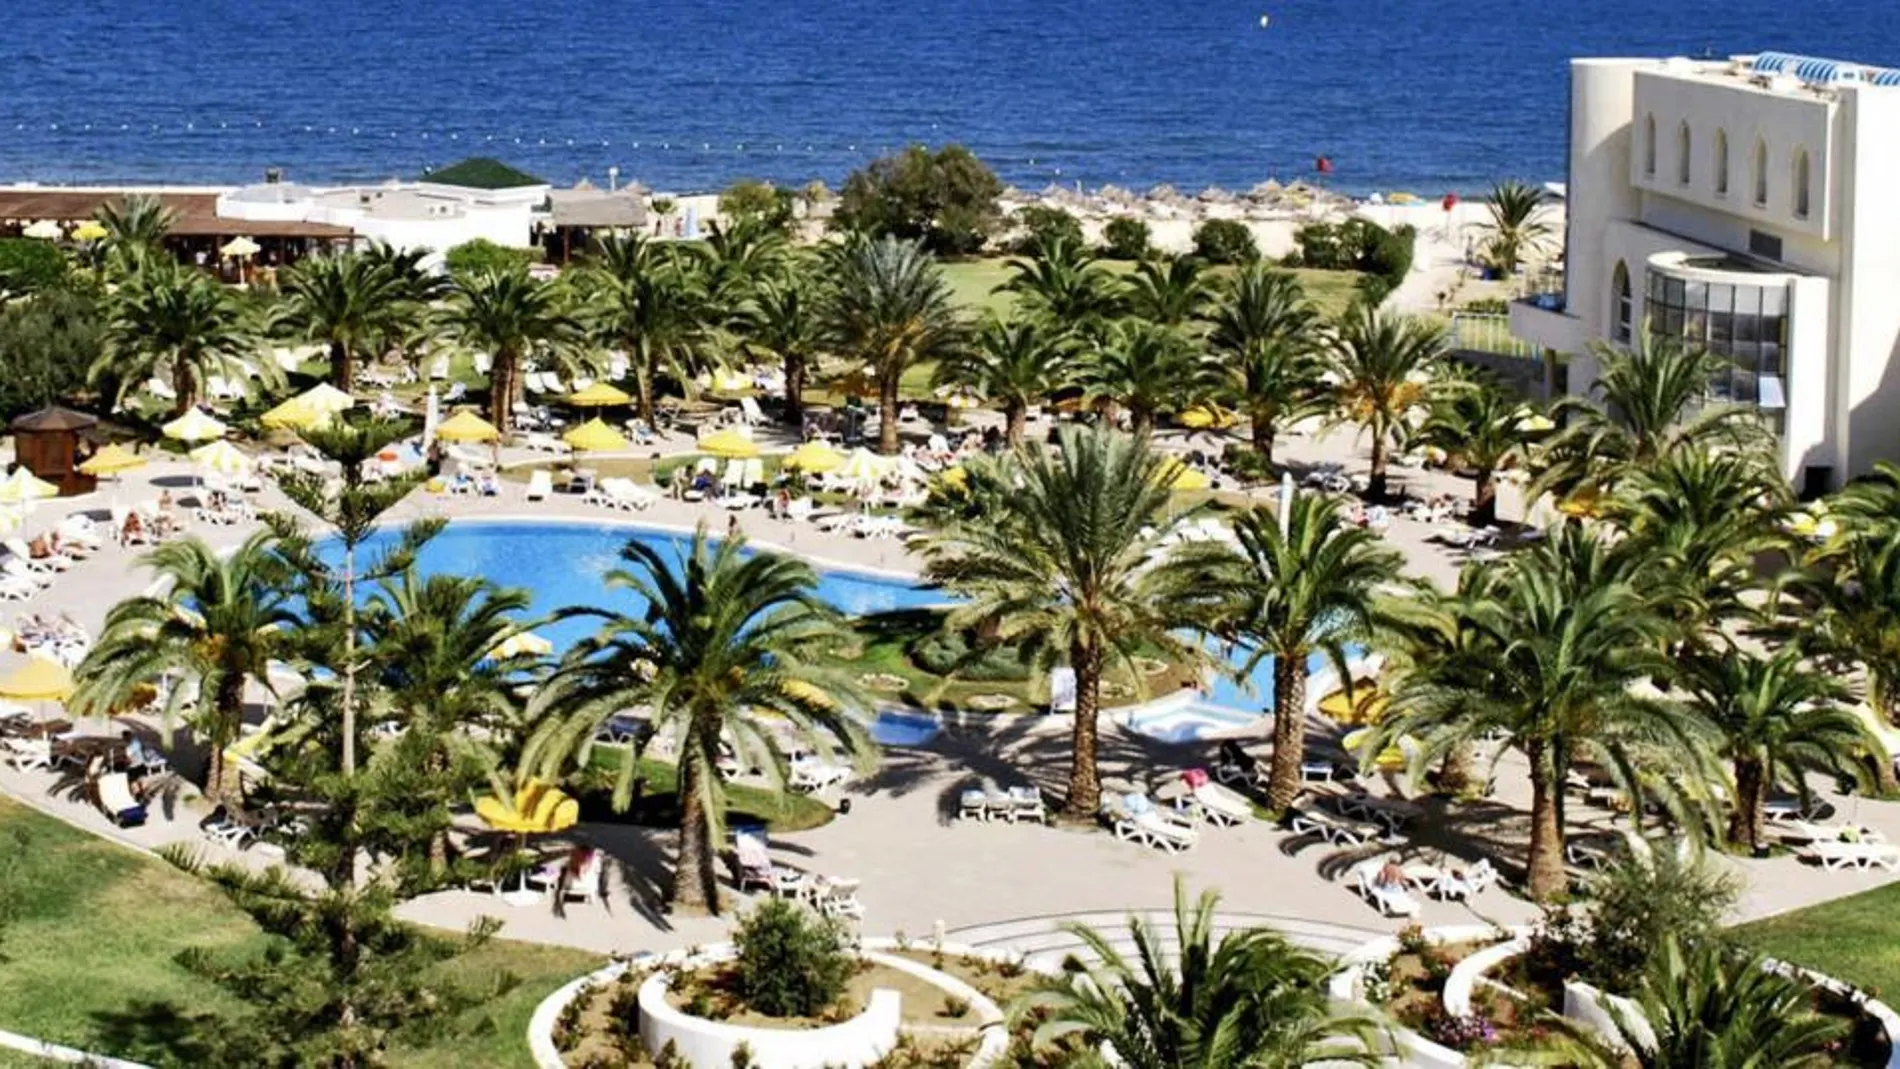 Fotografía del hotel "Imperial Marhaba"de la cadena española Riu que fue víctima de los ataques terrorista en Susa, Túnez.